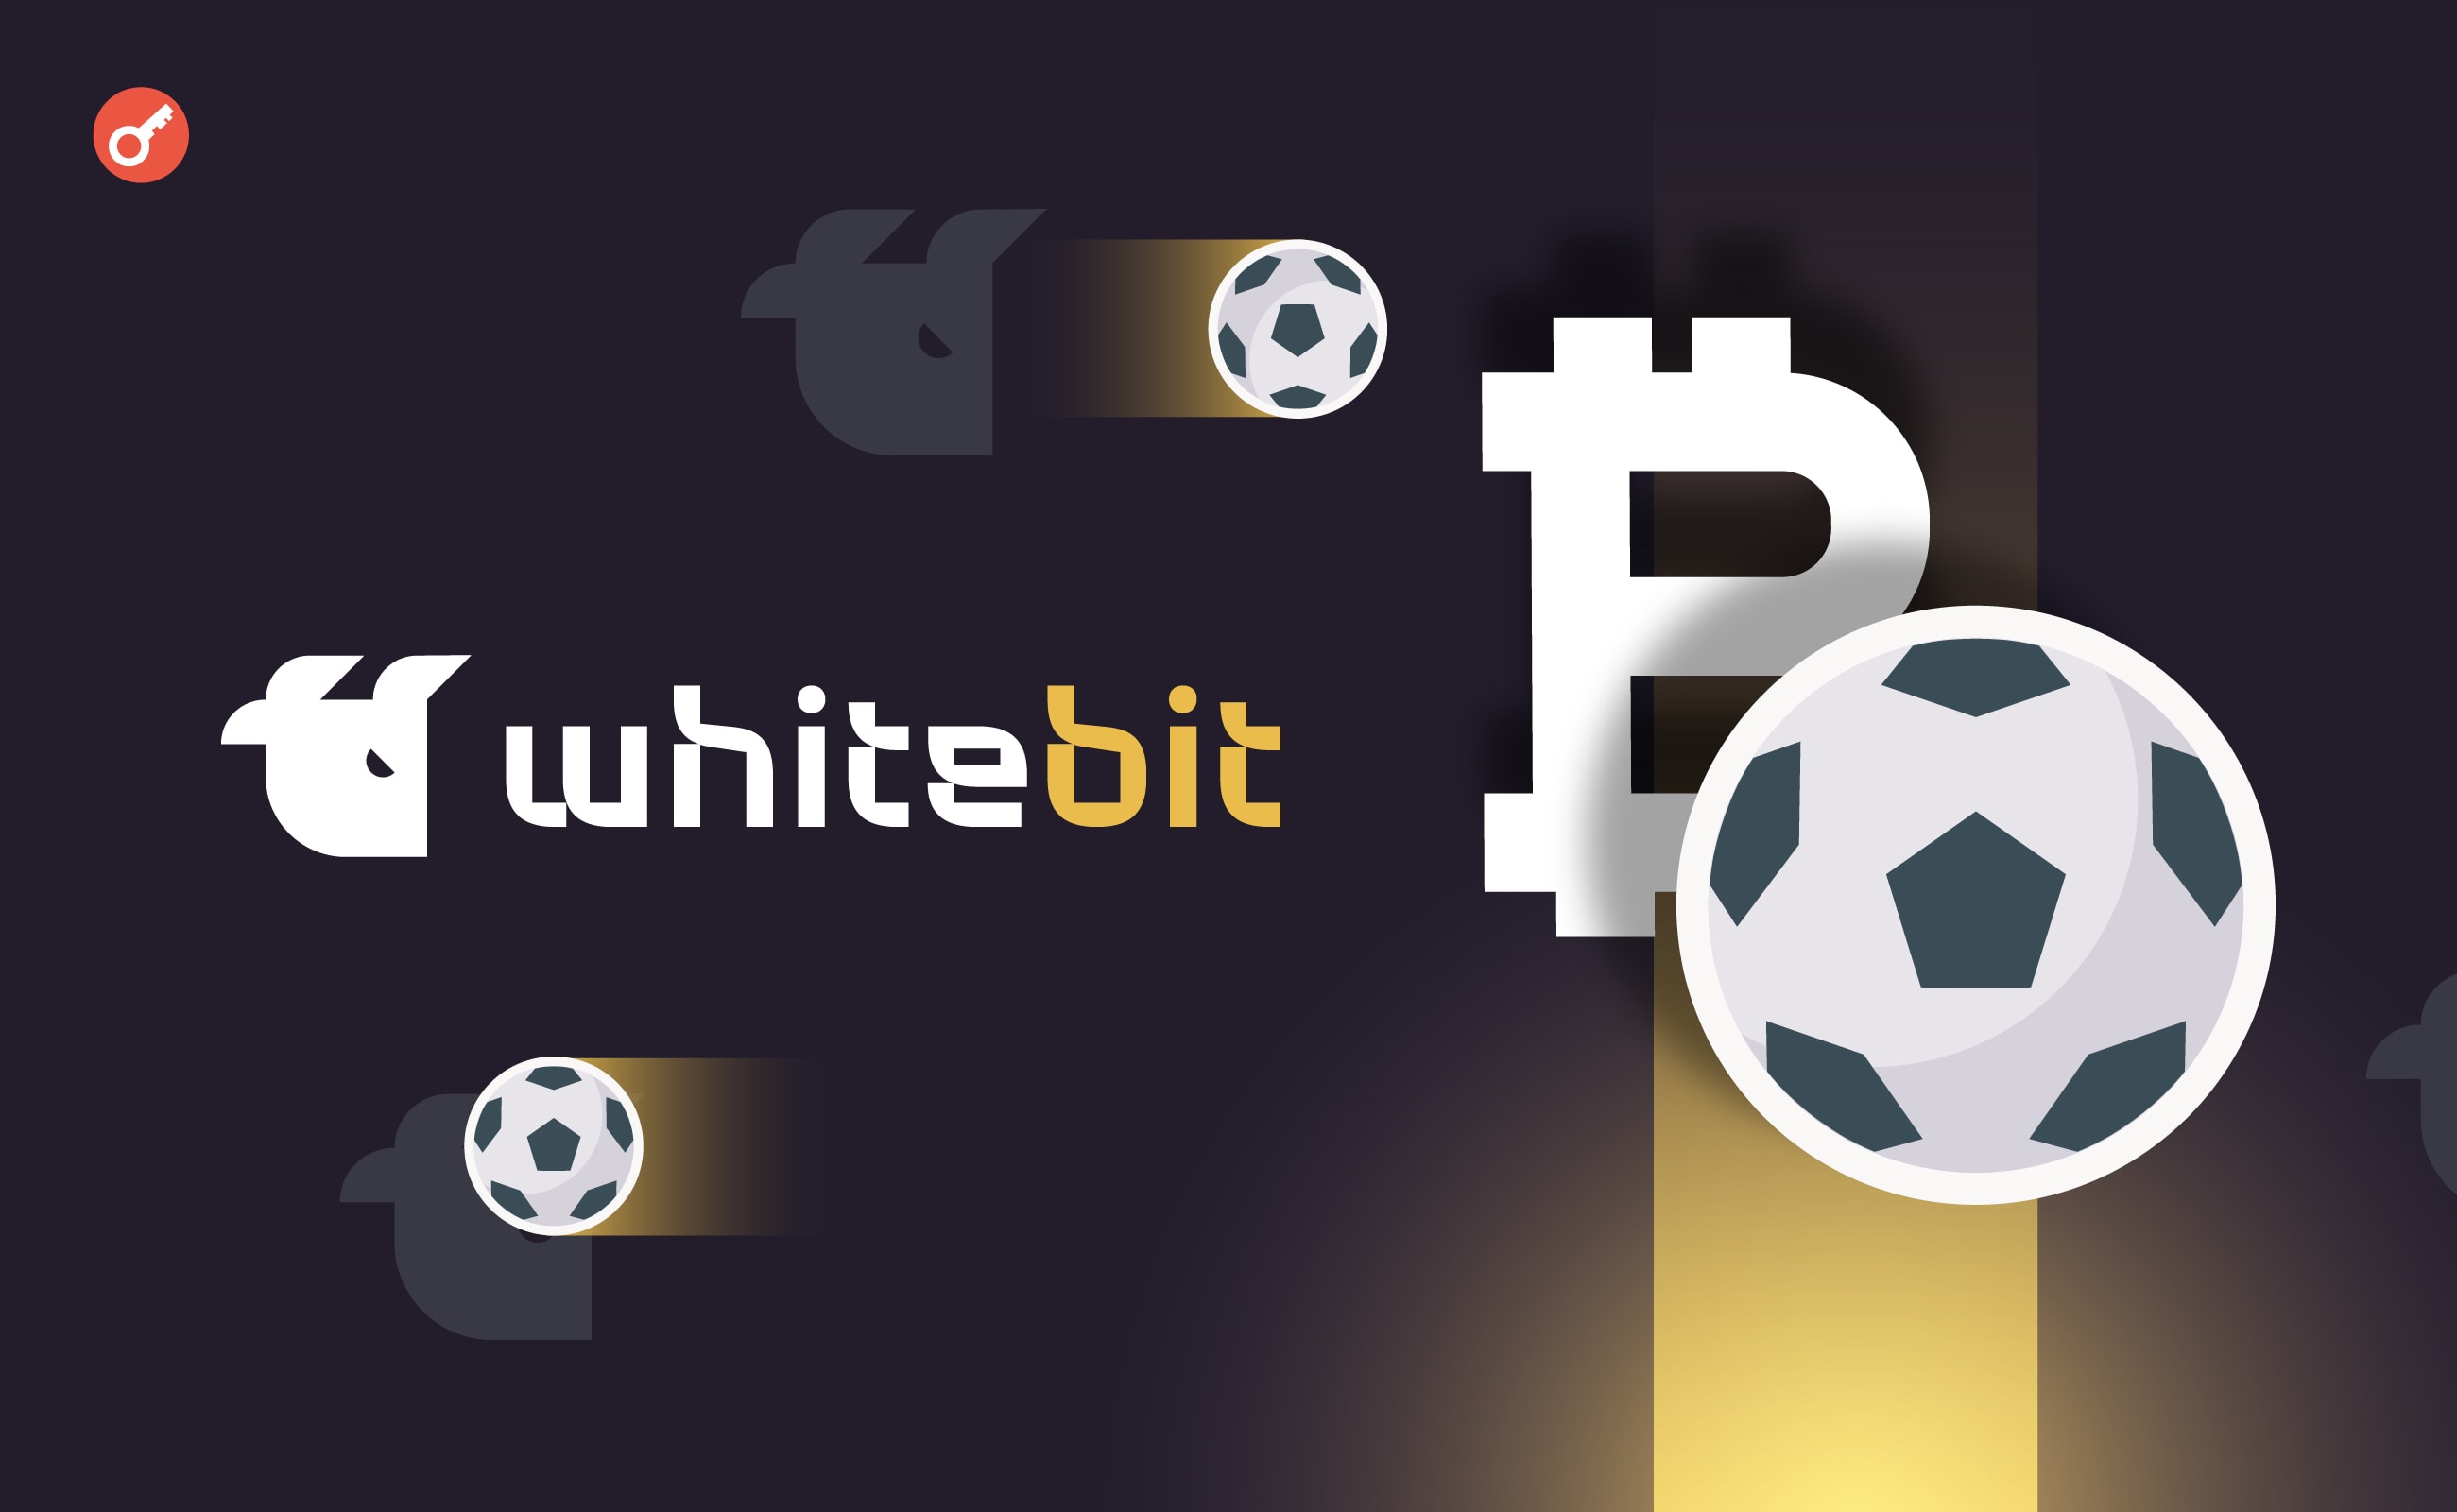 WhiteBIT анонсувала ранній продаж квитків на матч Україна — Італія за криптовалюту. Головний колаж новини.